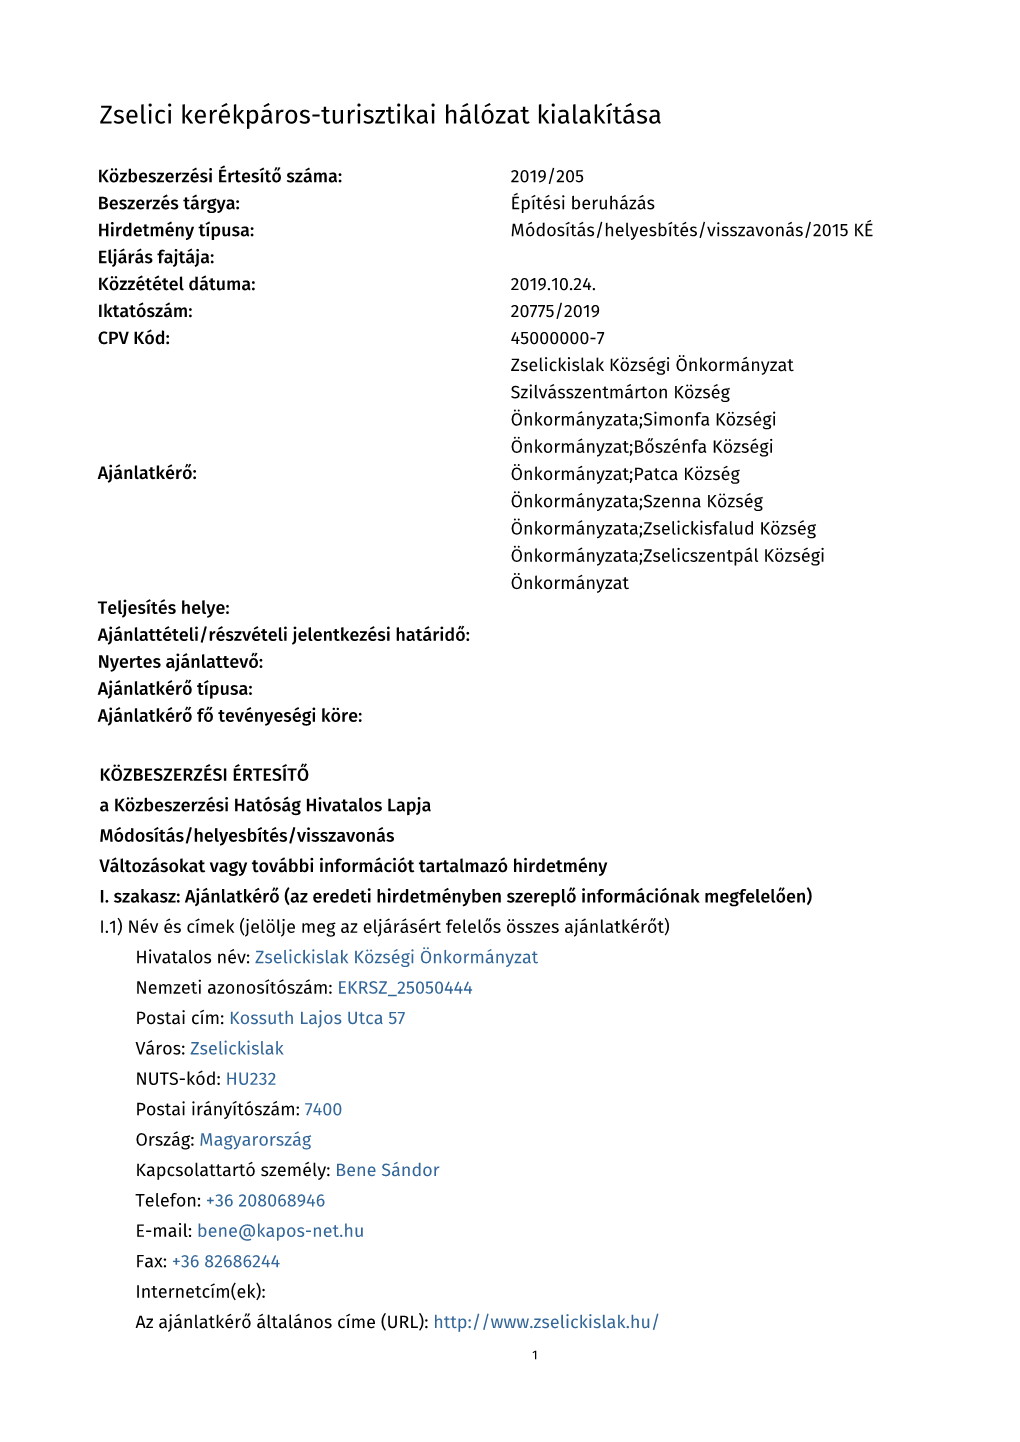 Hirdetmény Letöltése PDF Formátumban